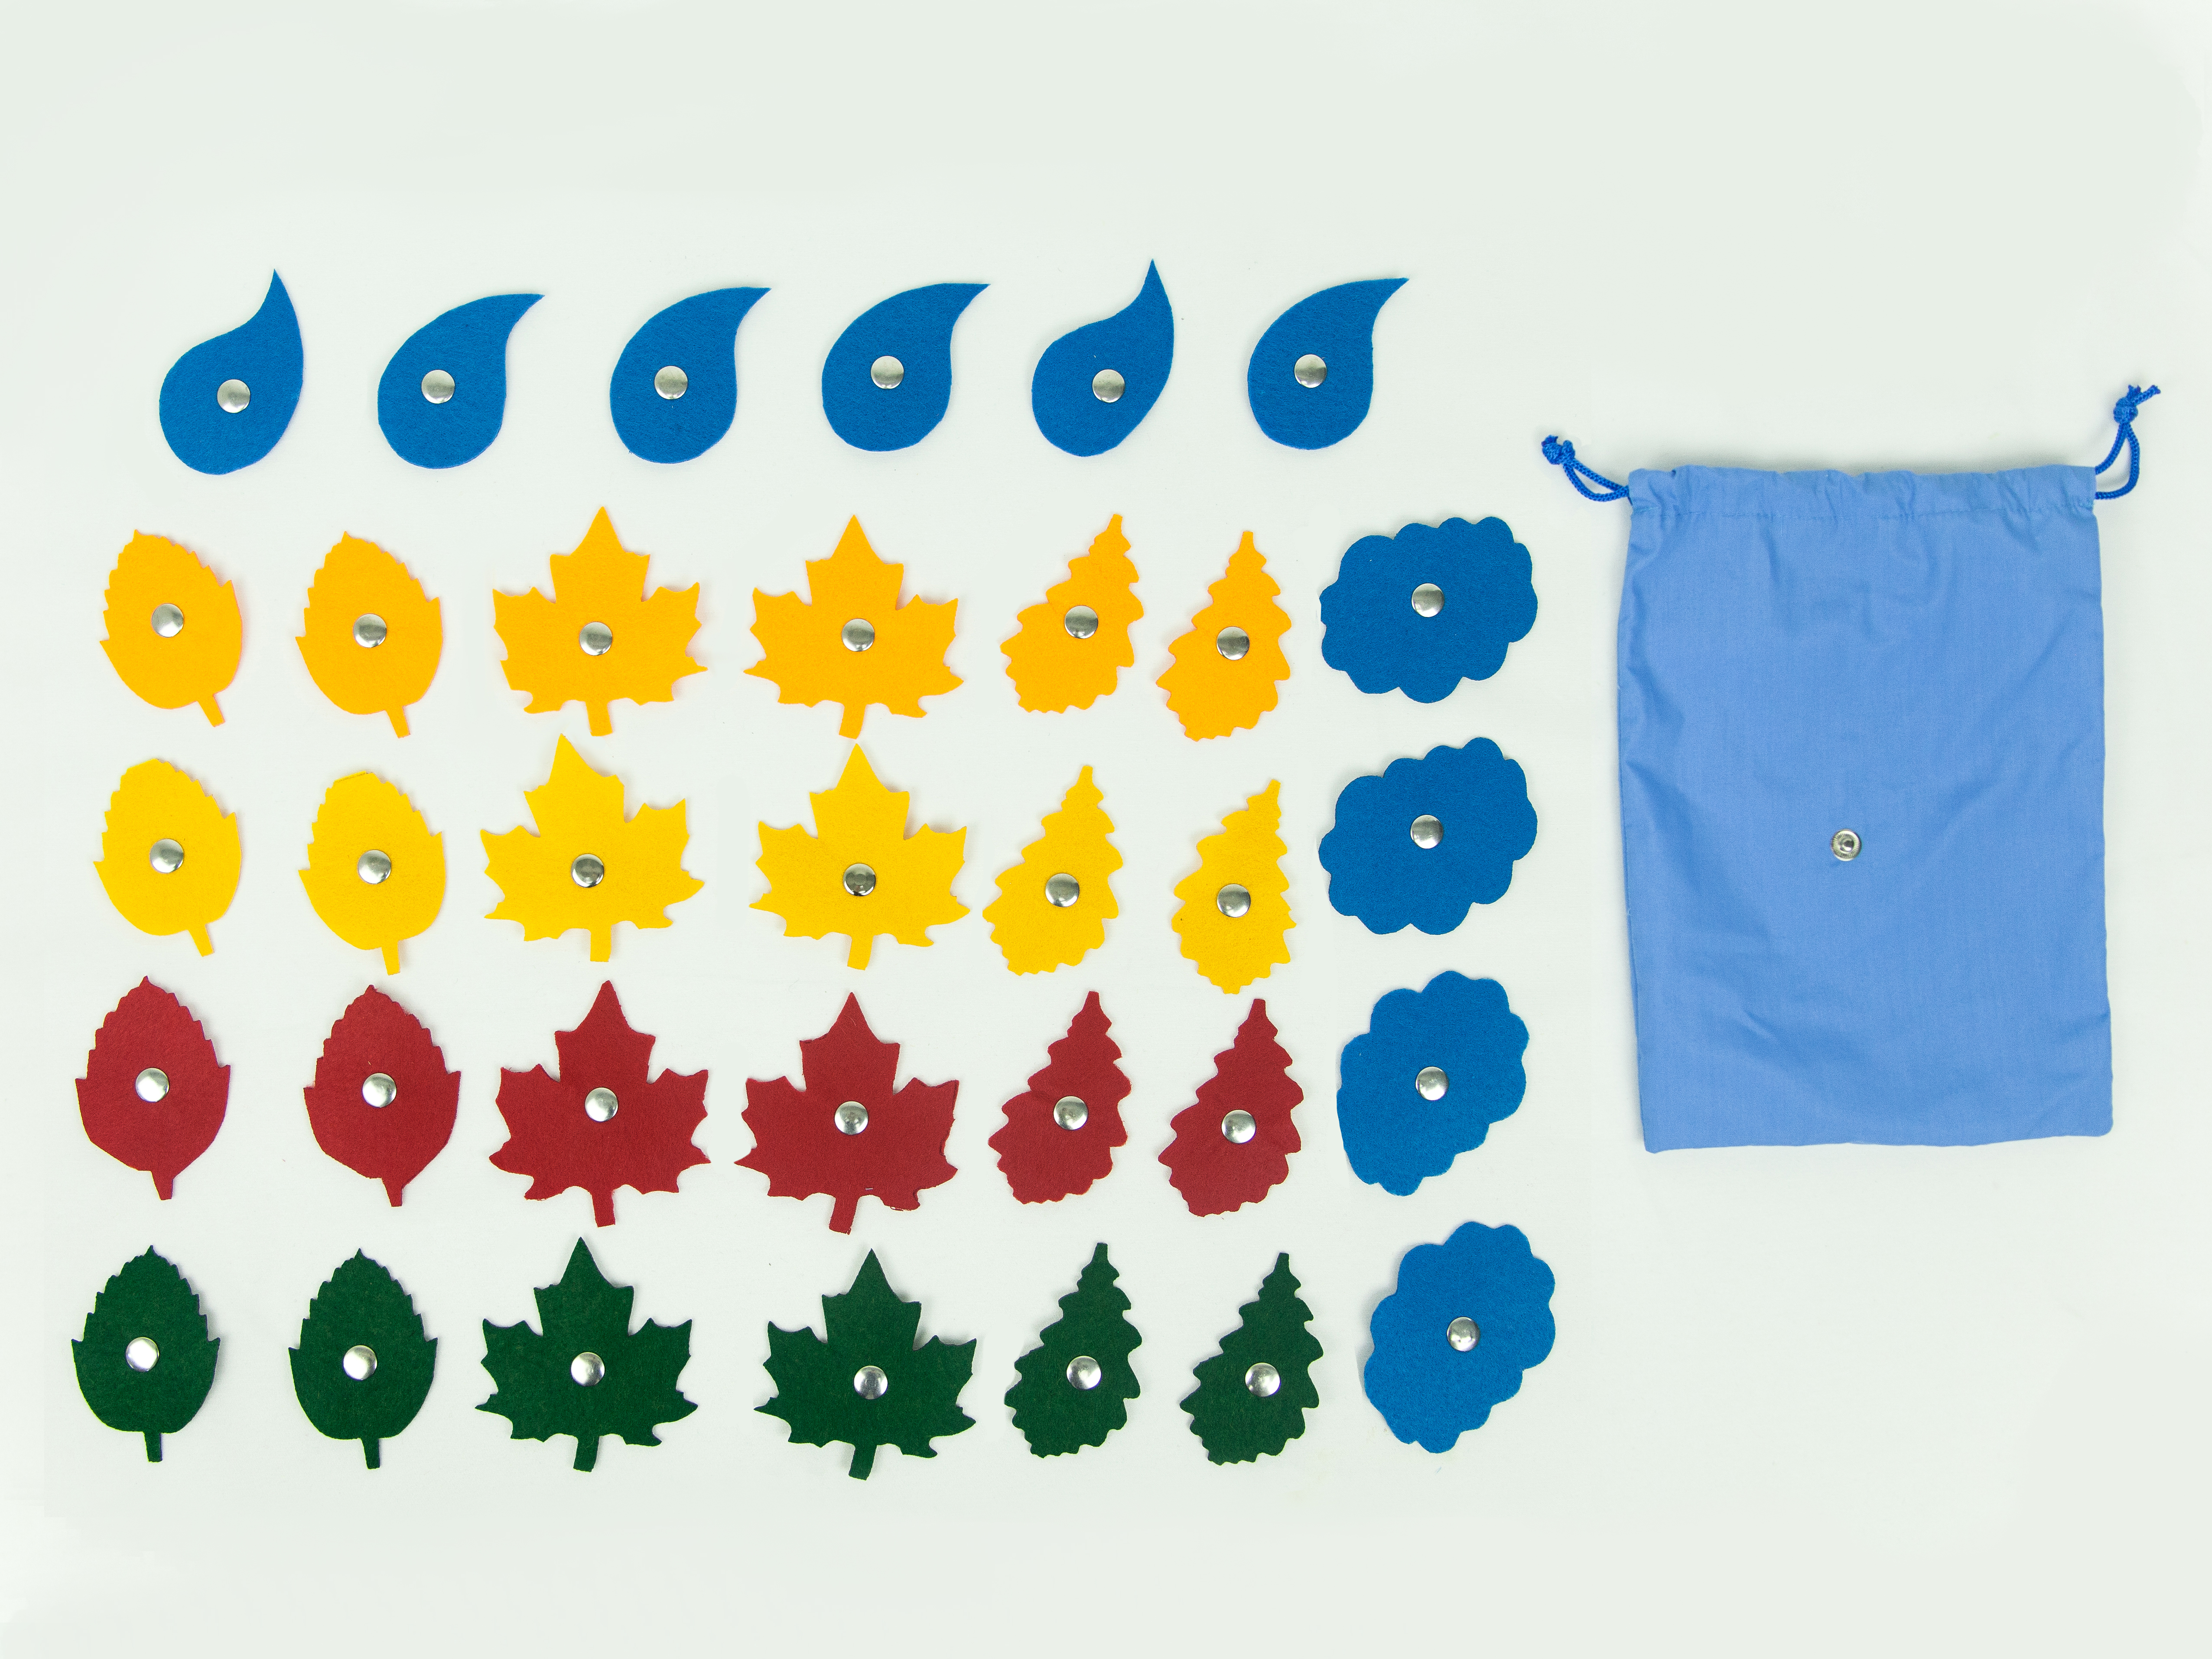 Аксессуары для жилета с 32 кнопками: листья, тучки и капельки (32 фигуры)